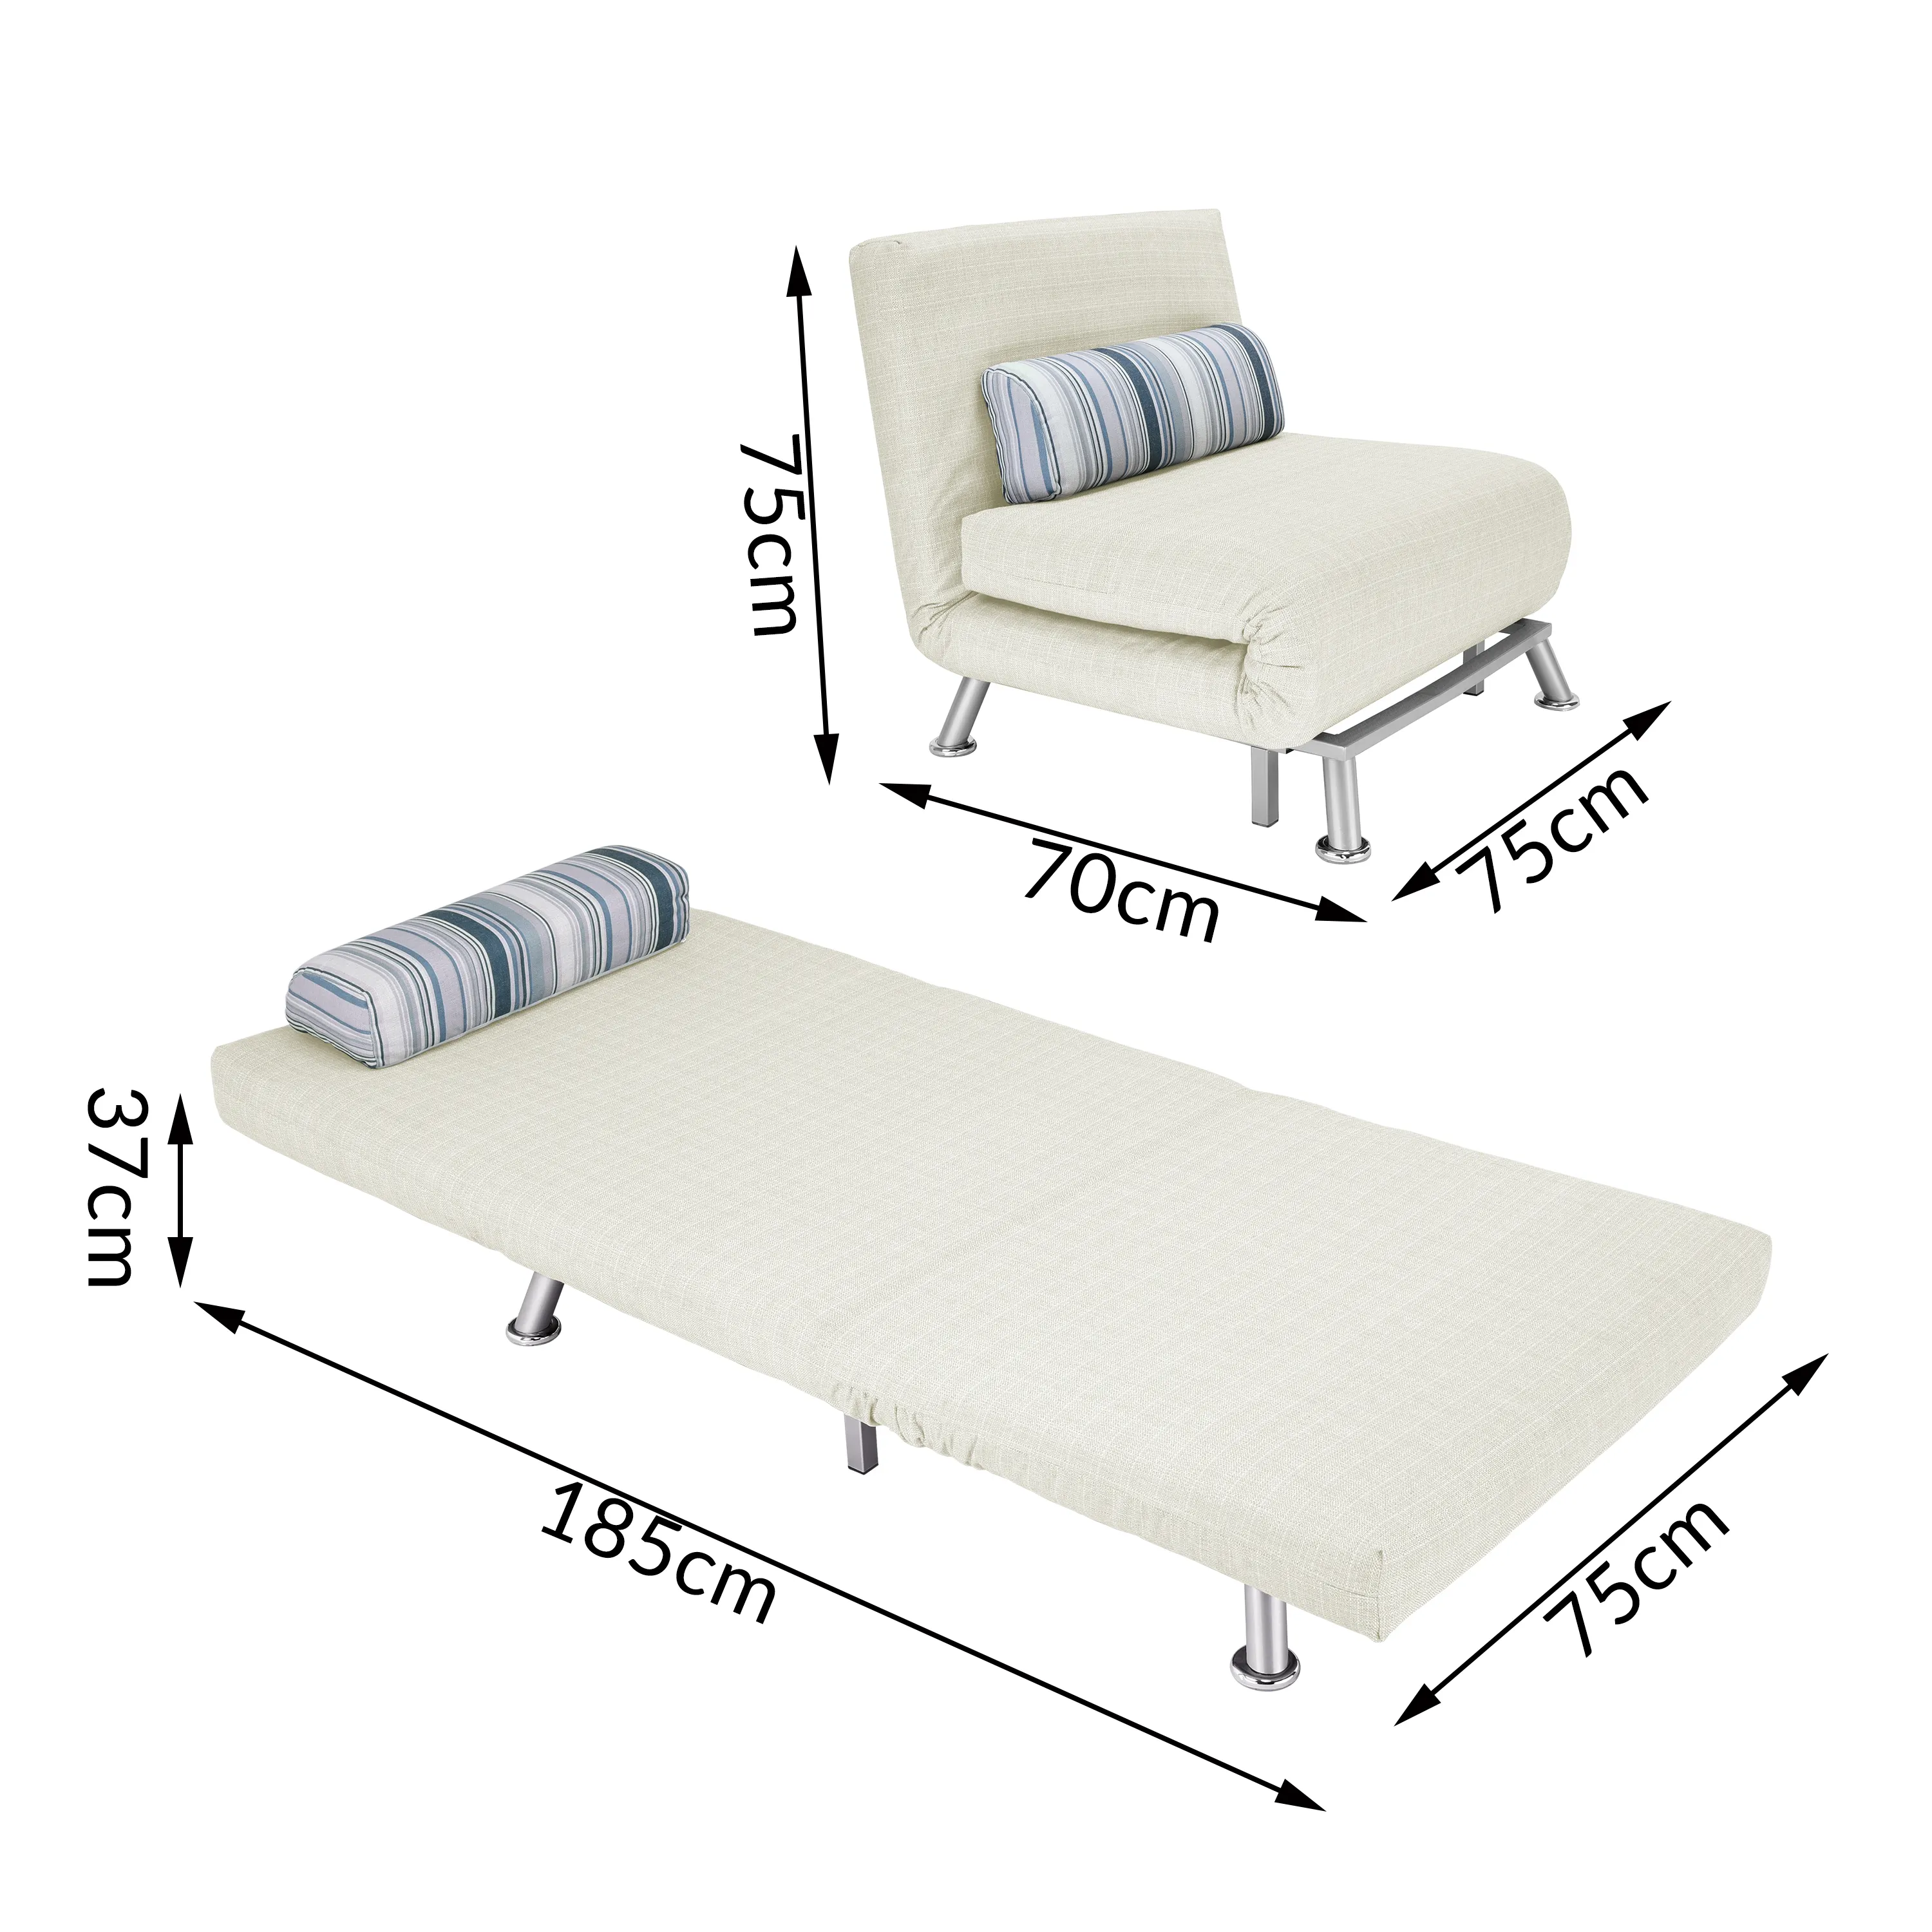 접이식 소파 침대 금속 구조 덮개를 씌운 패브릭 안락 의자 접이식 싱글 침대 그레이 크림 거실/침실